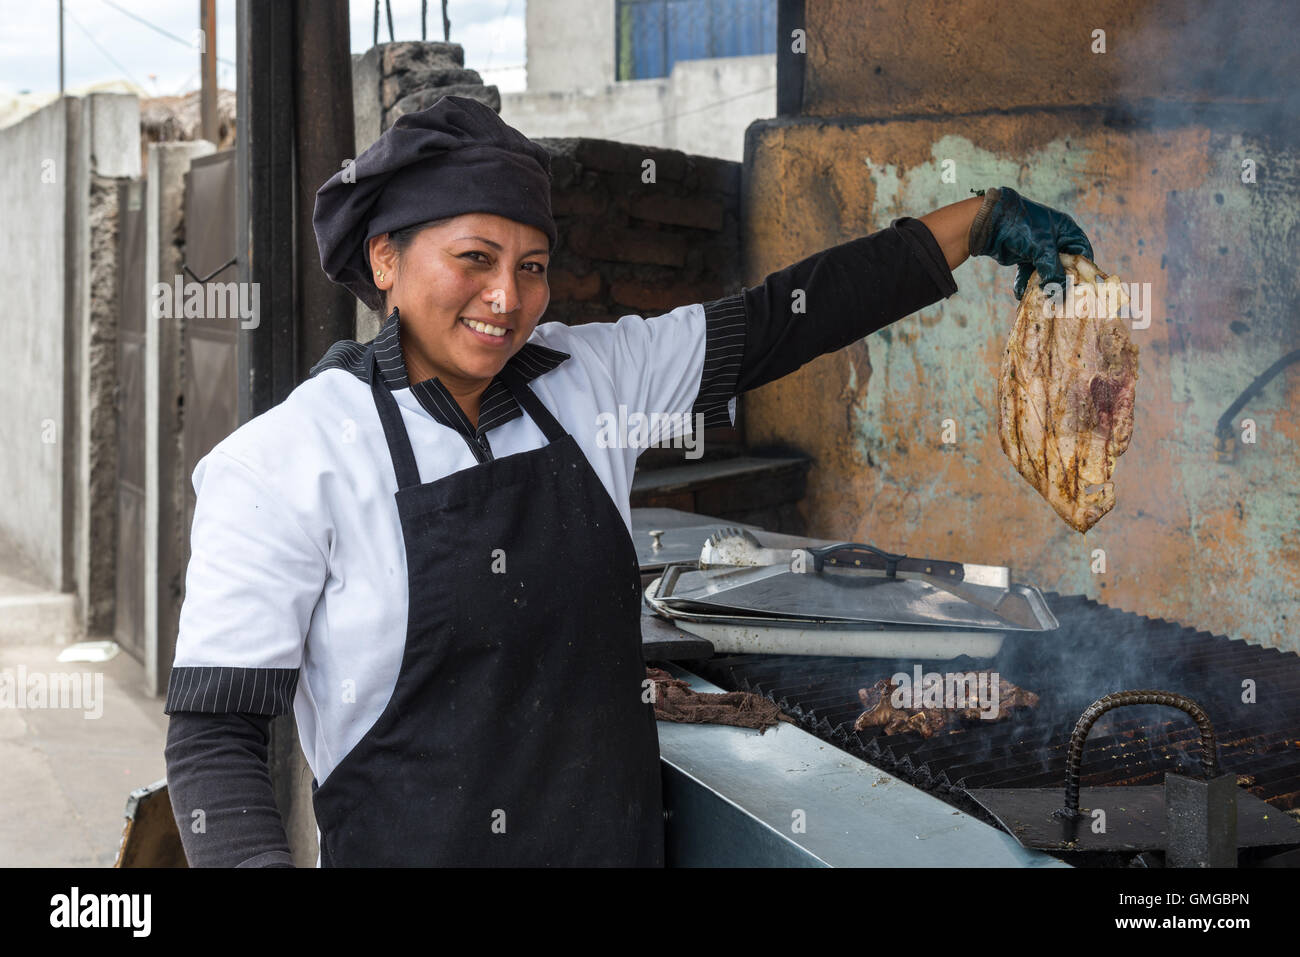 Une femme cuisinière montrant un morceau de viande qu'elle est sur le point de mettre sur un grill. Quito, Equateur. Banque D'Images